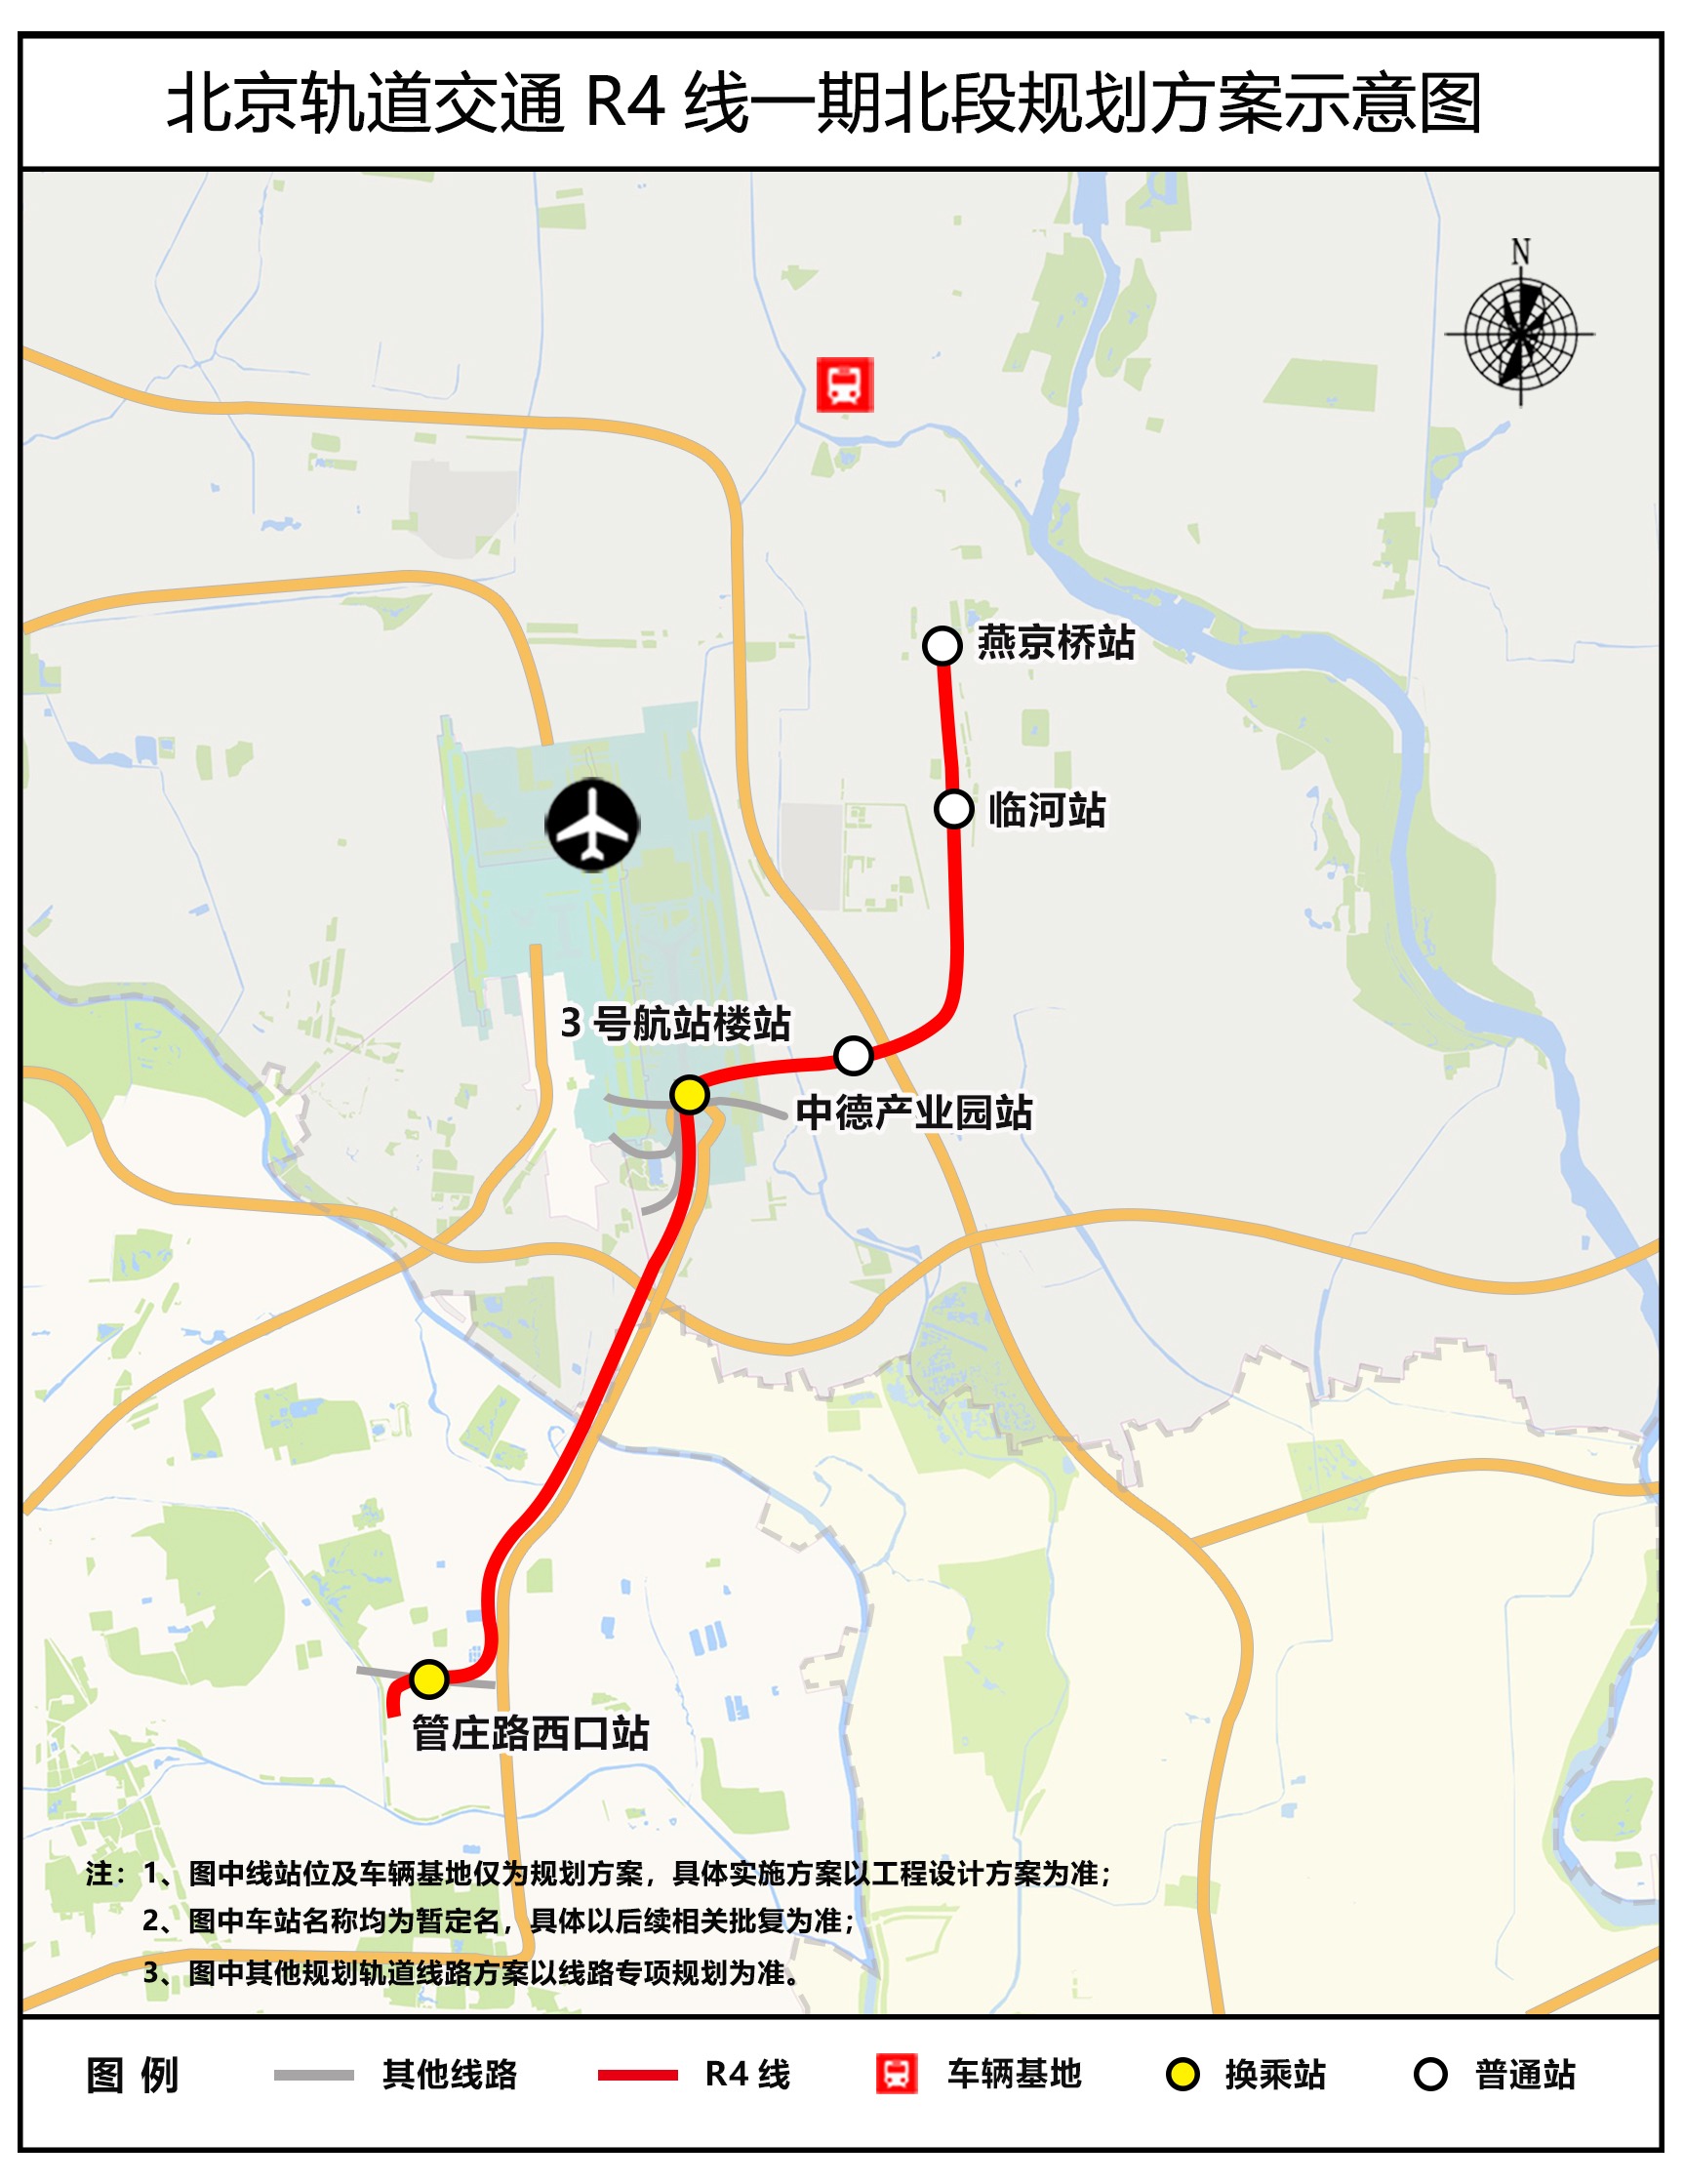 北京軌道交通R4線一期北段規劃方案示意圖。圖片來自北京市基礎設施投資有限公司官網